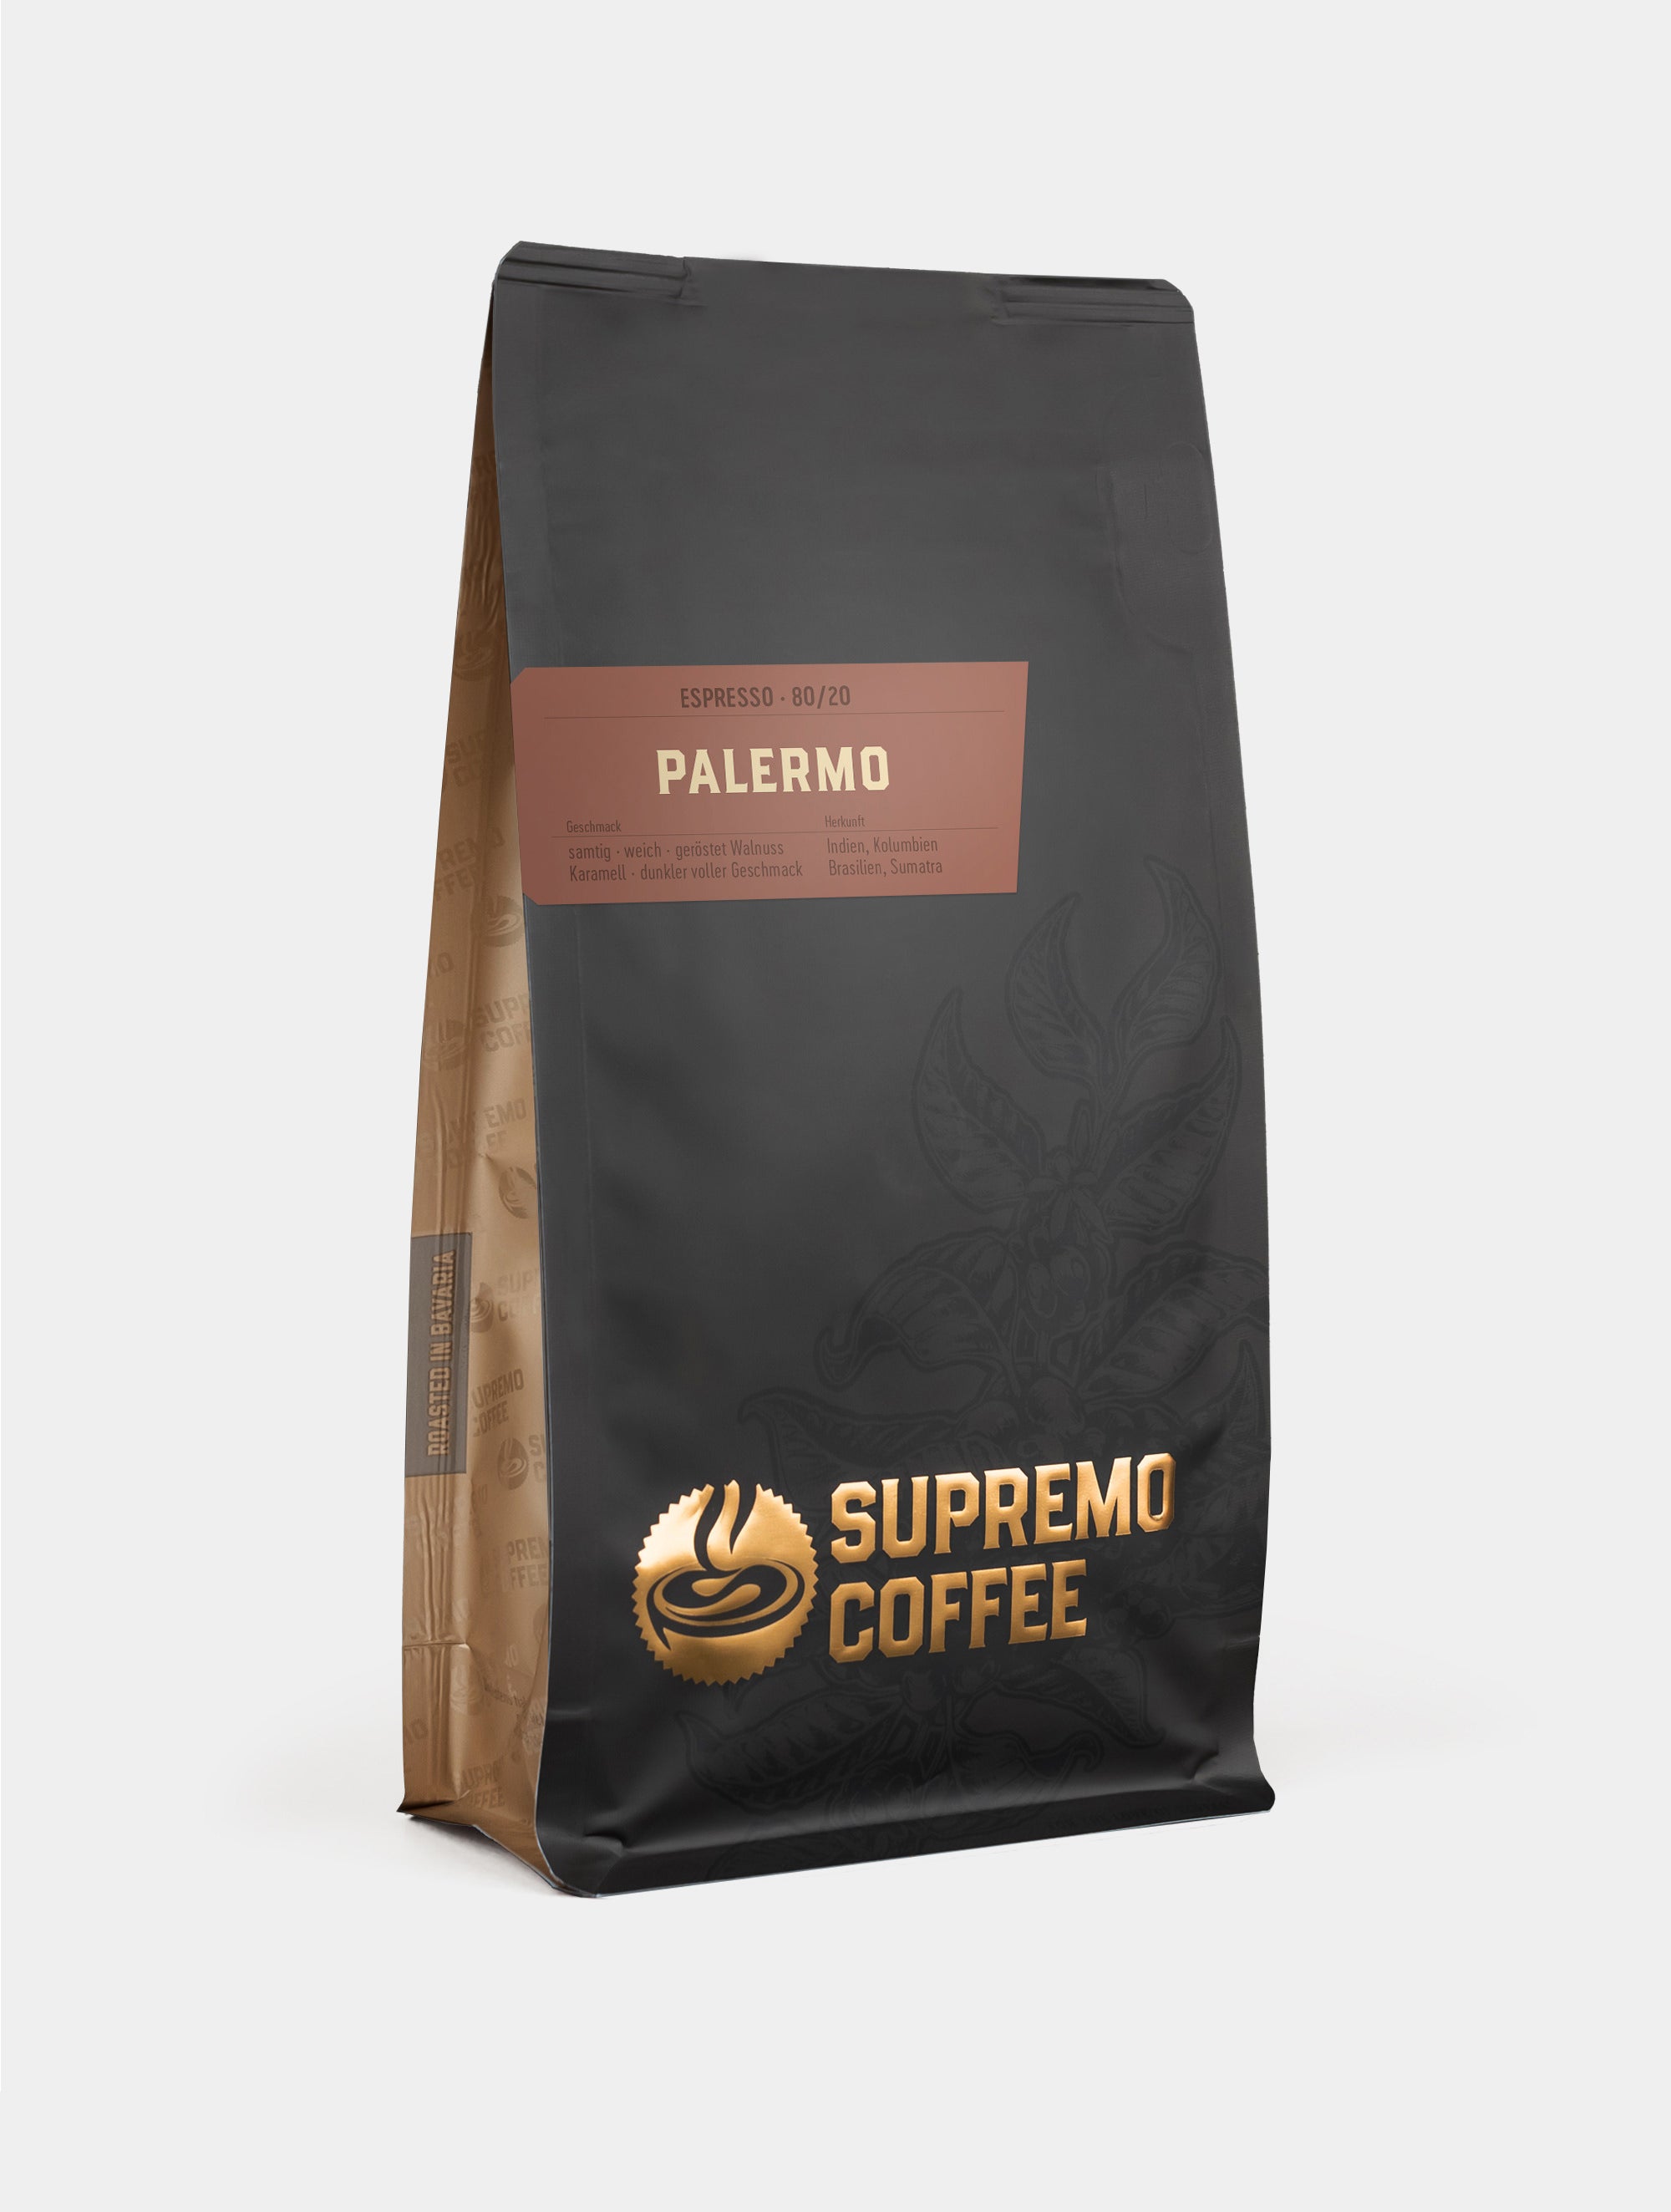 Palermo, Espresso 80/20 | SUPREMO Coffee